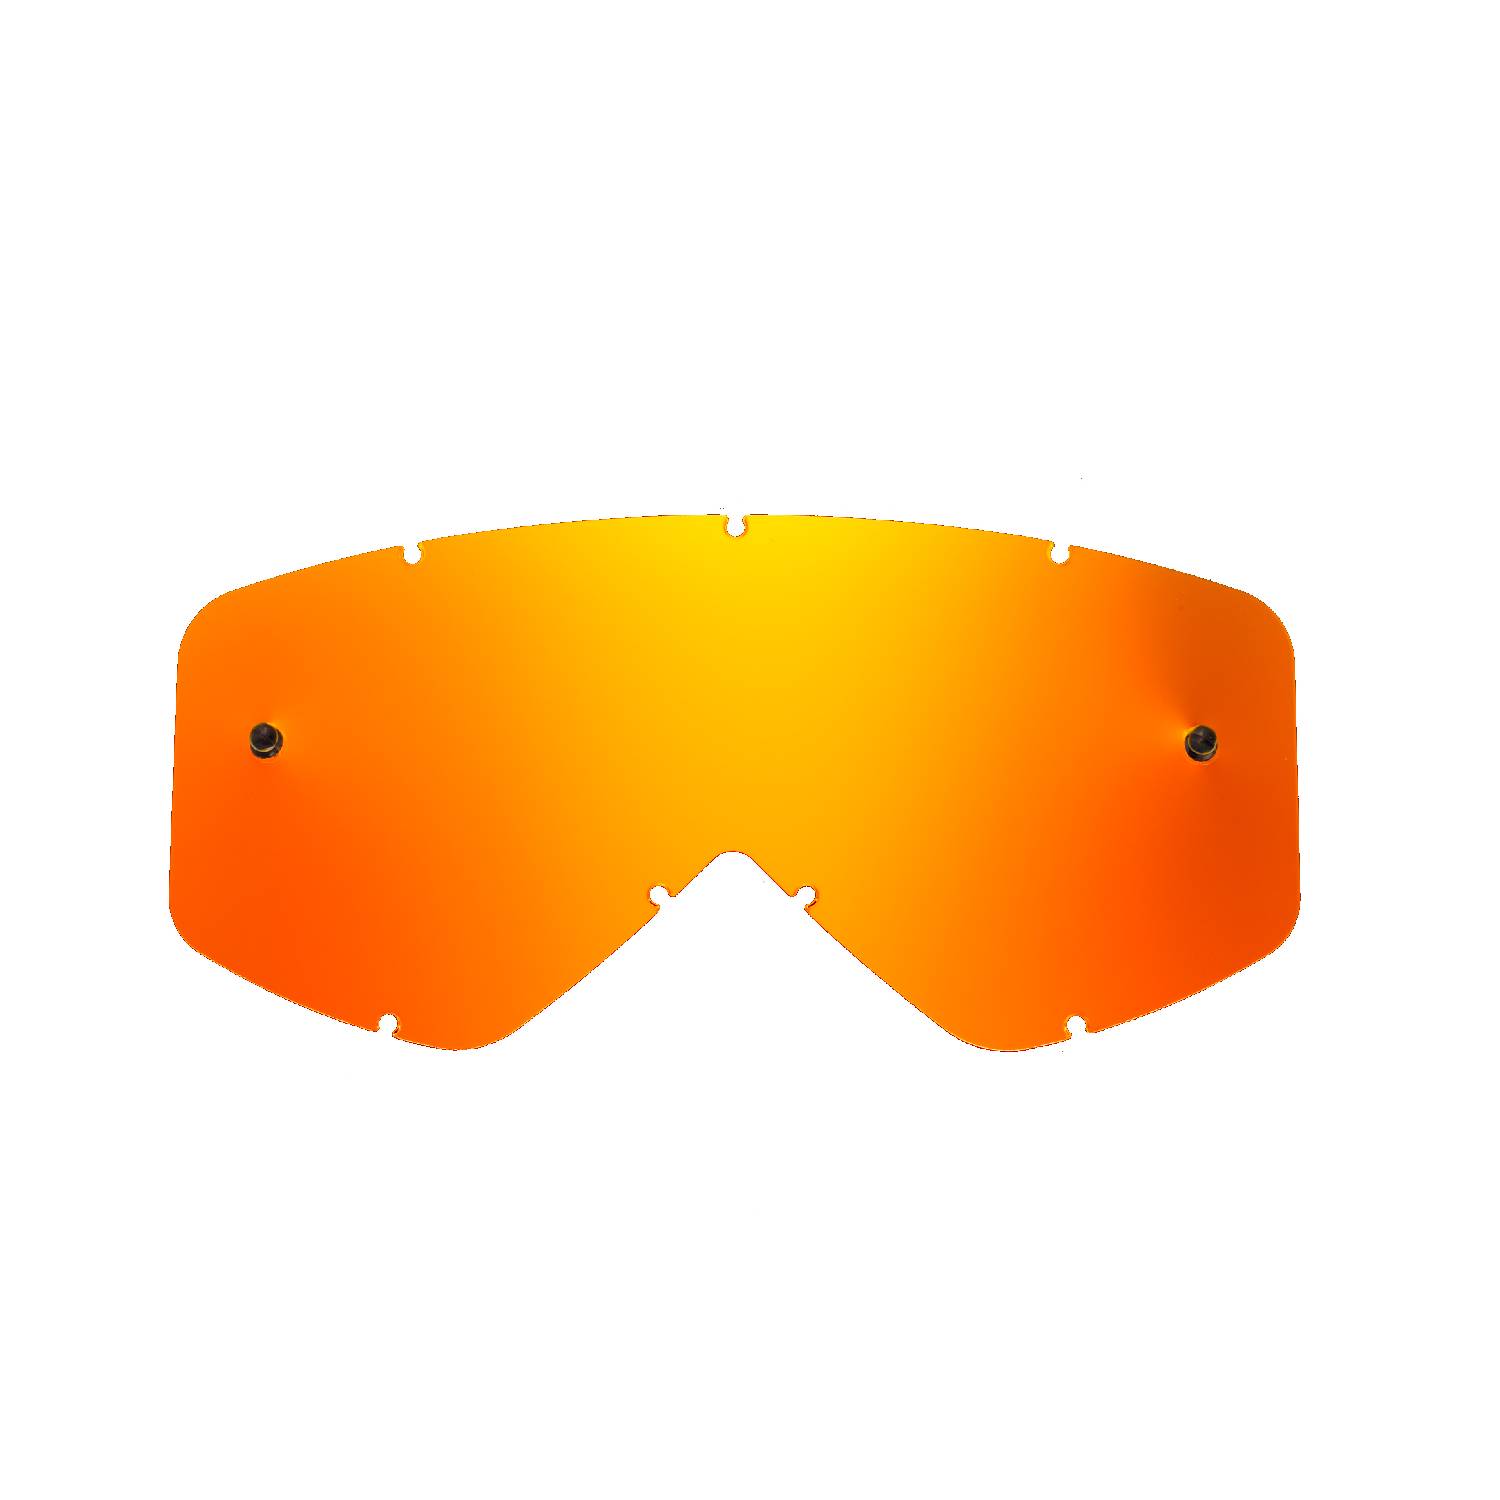 Lente di ricambio arancio specchiato compatibile per occhiale/maschera Smith Fuel / Intake / V1 / V2